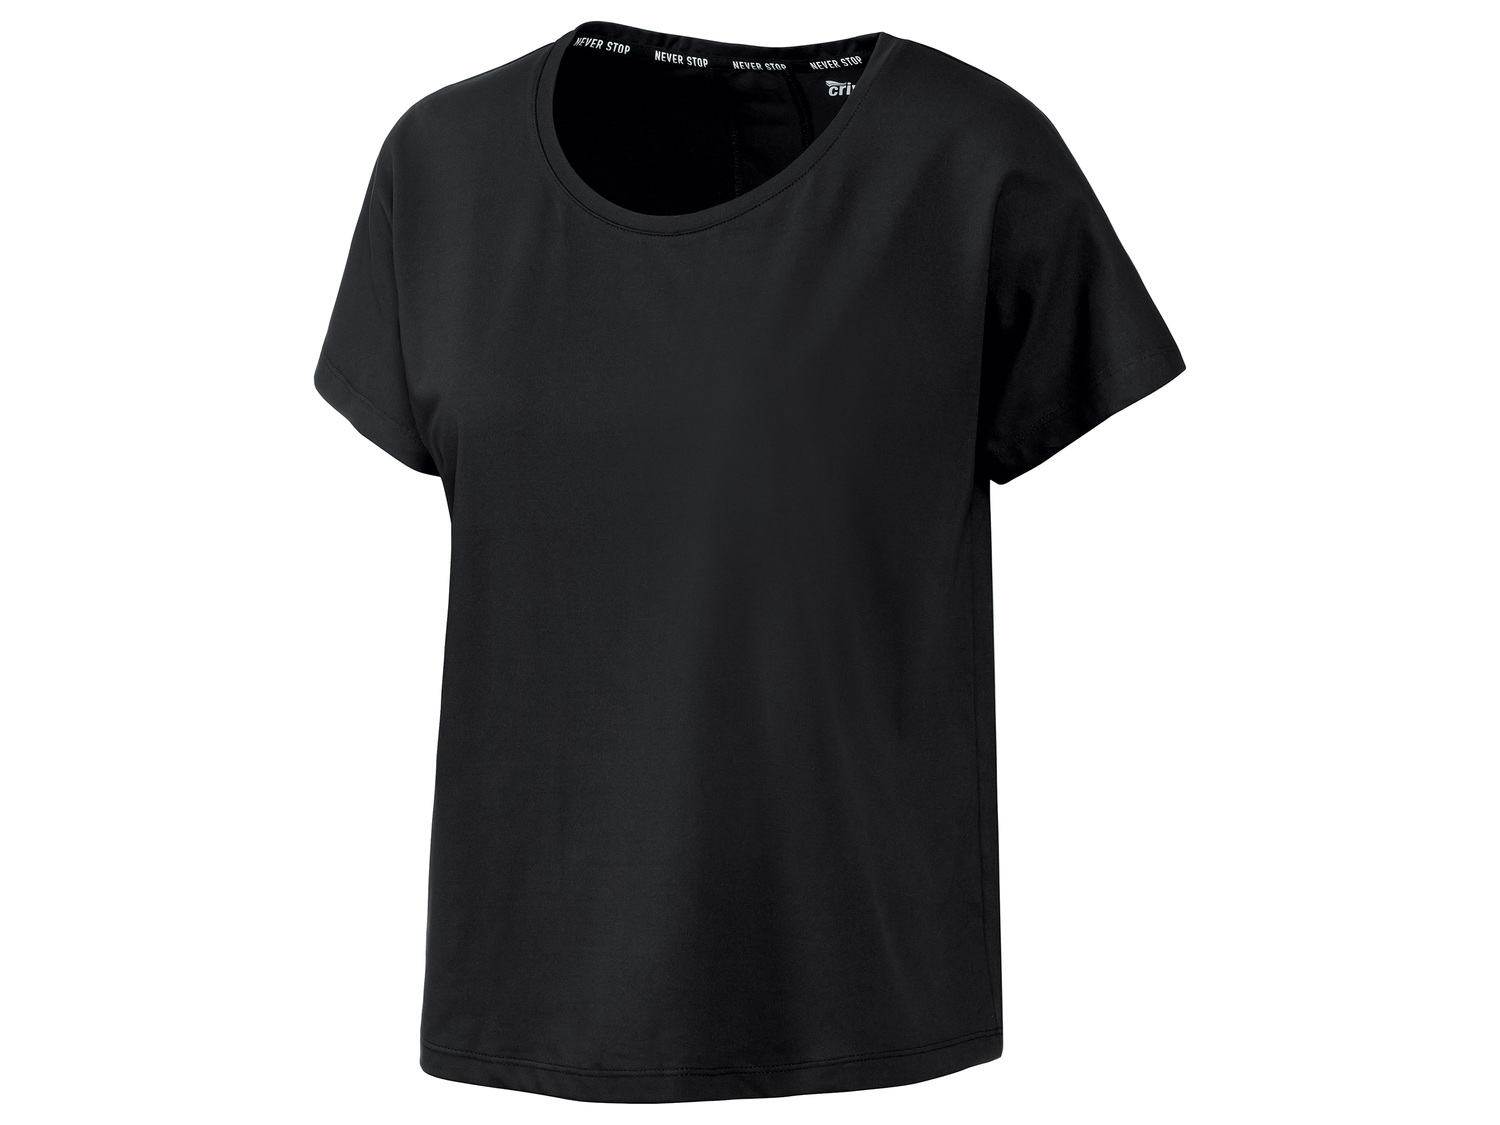 T-shirt technique femme , le prix 4.99 € 
- Ex. 91 % polyester et 9% élasthanne
- ...